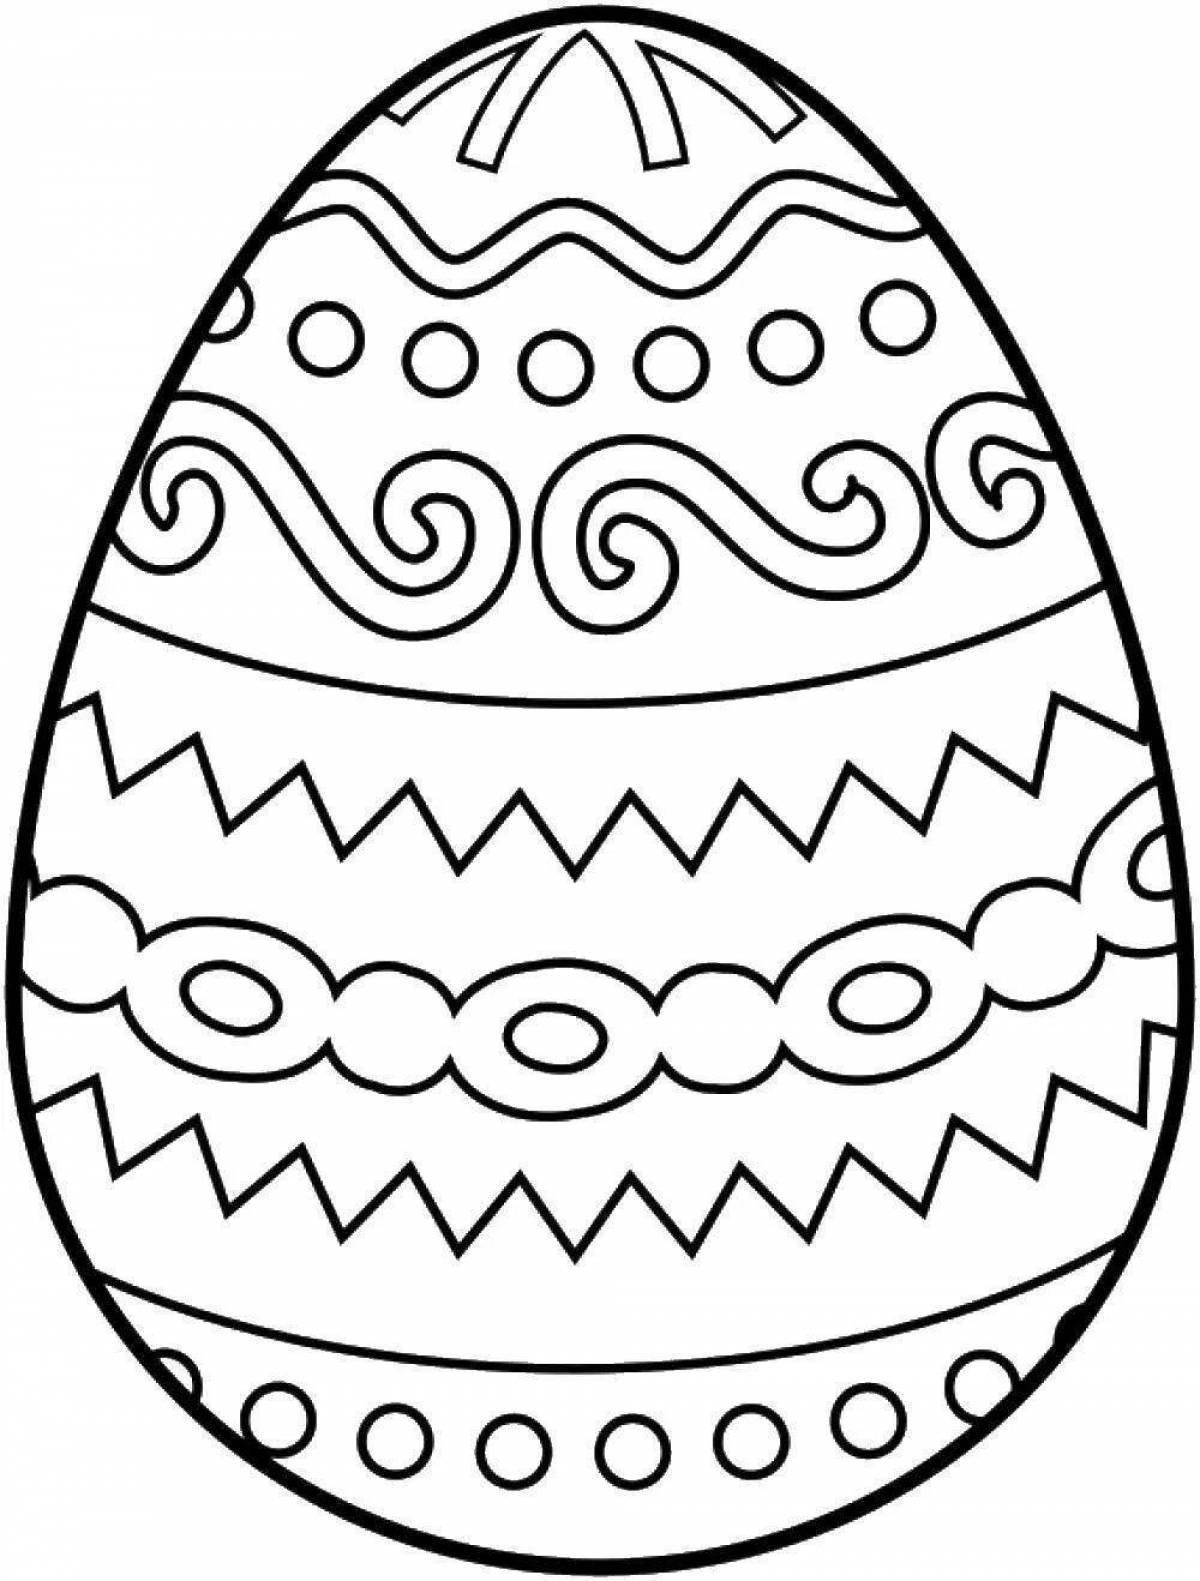 Юмористическая раскраска яичек